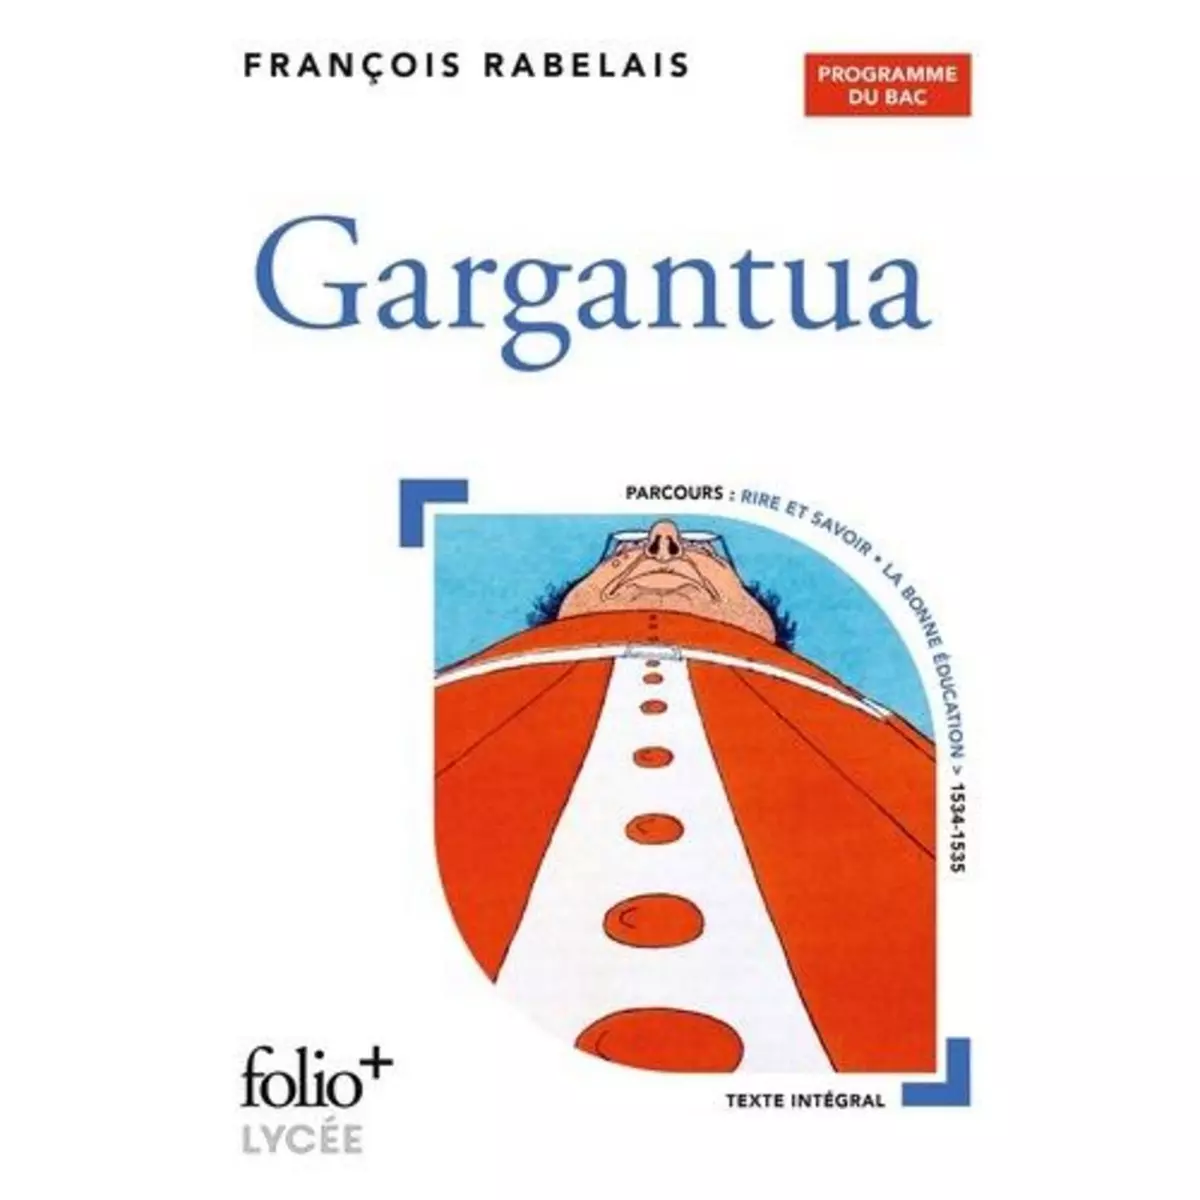  GARGANTUA, Rabelais François